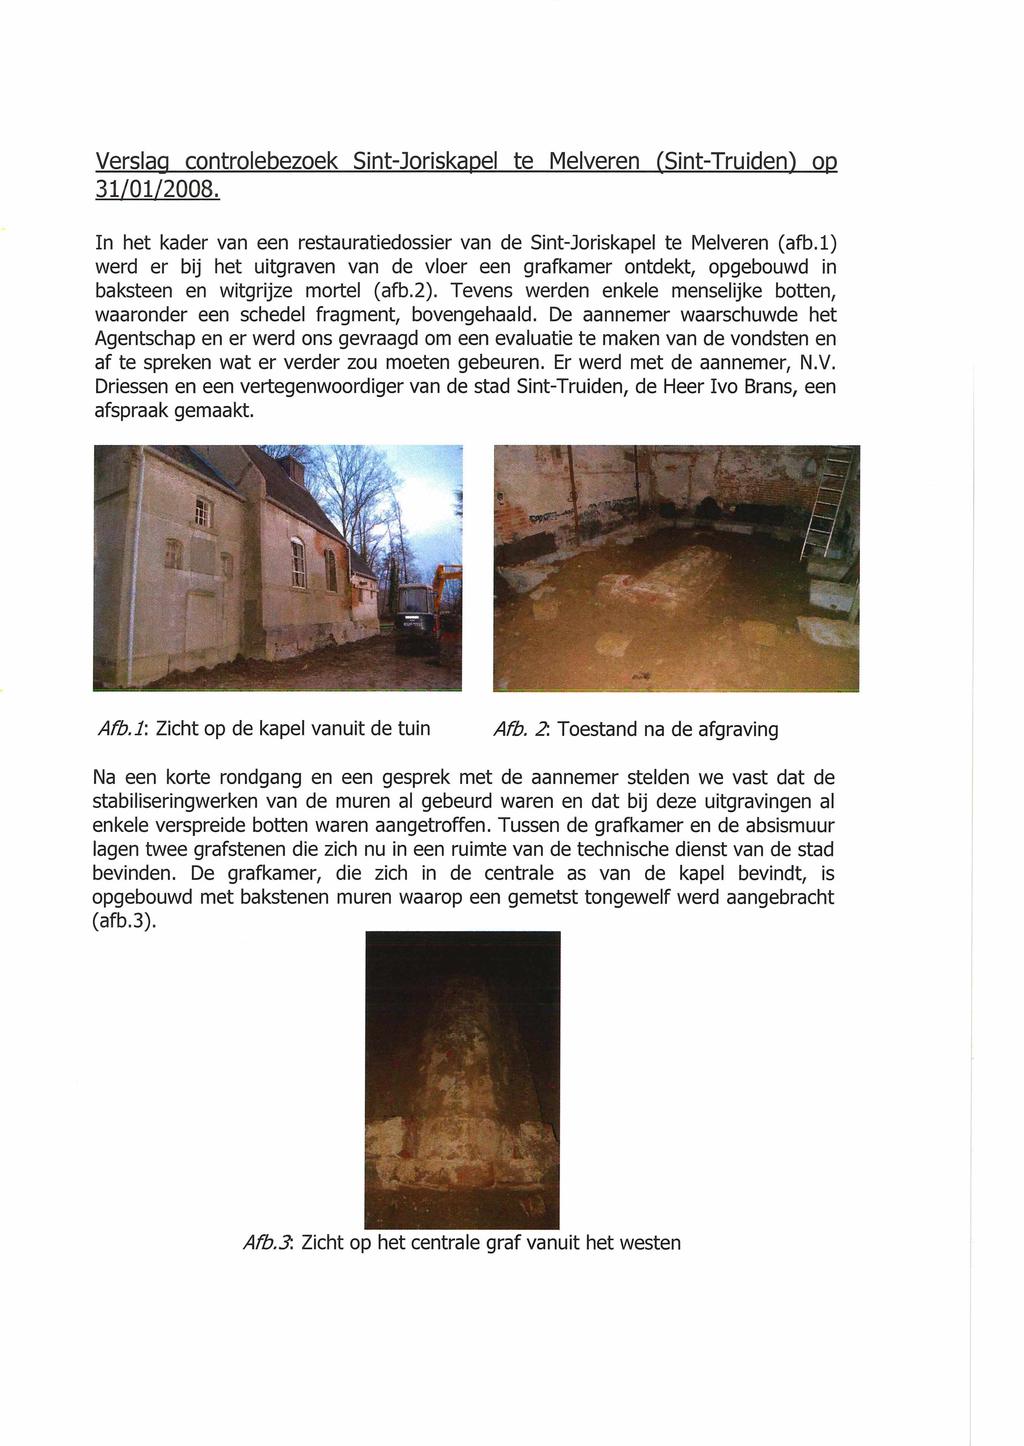 Verslag controlebezoek Sint-Joriskapel te Melveren (Sint-Truidenj op 31/01/2008. In het kader van een restauratiedossier van de Sint-Joriskapel te Melveren (afb.